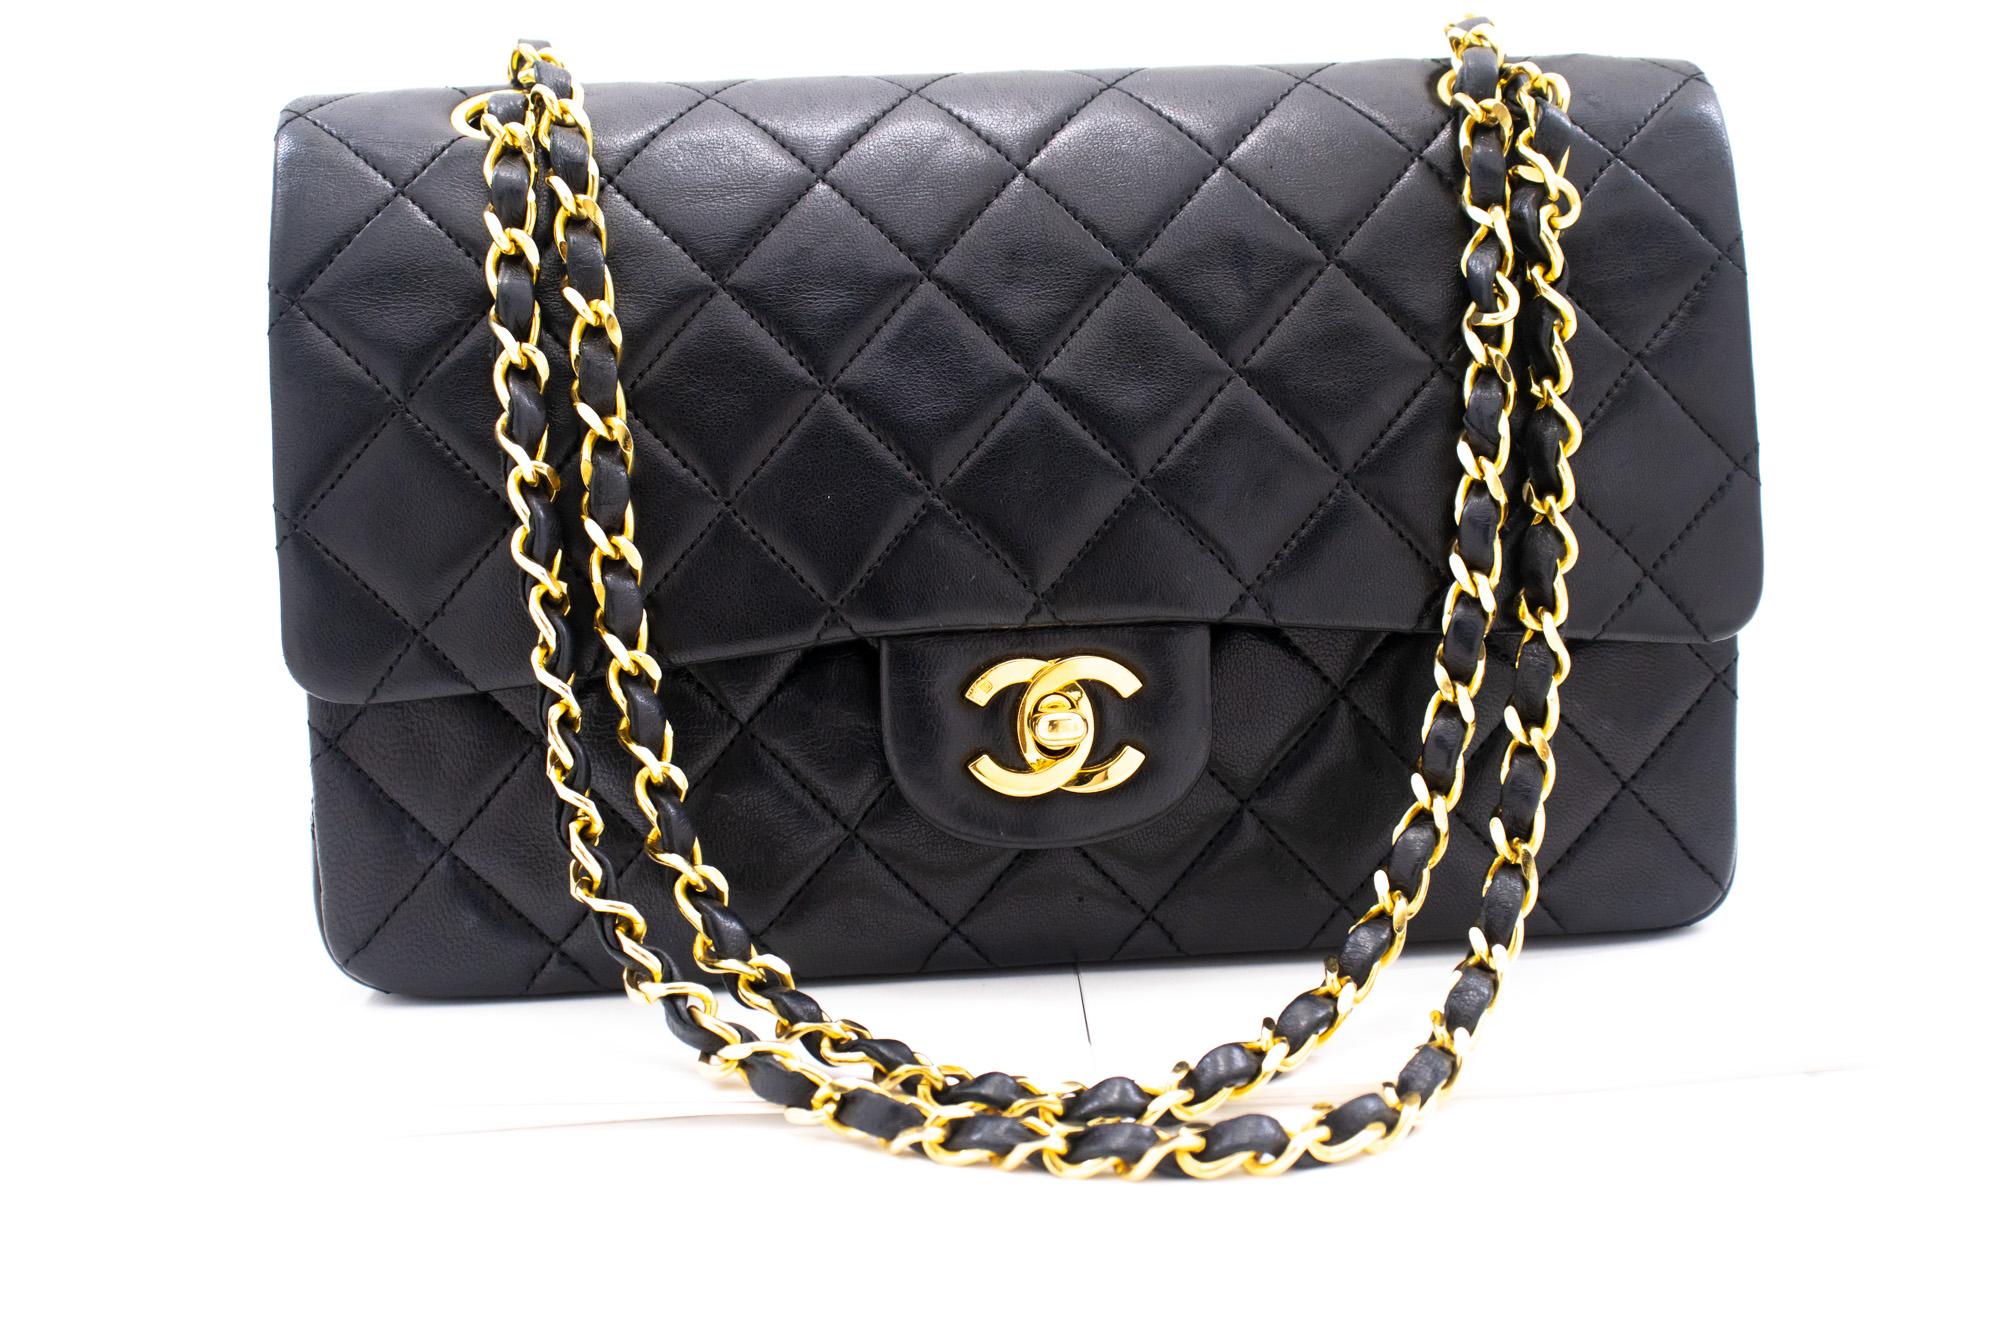 Authentique Chanel Classic Double Flap Medium Chain Shoulder Bag Black Lamb. La couleur est noire. Le matériau extérieur est le cuir. Le motif est solide. Cet article est un Vintage / Classique. L'année de fabrication serait 1986-1988.
Conditions et